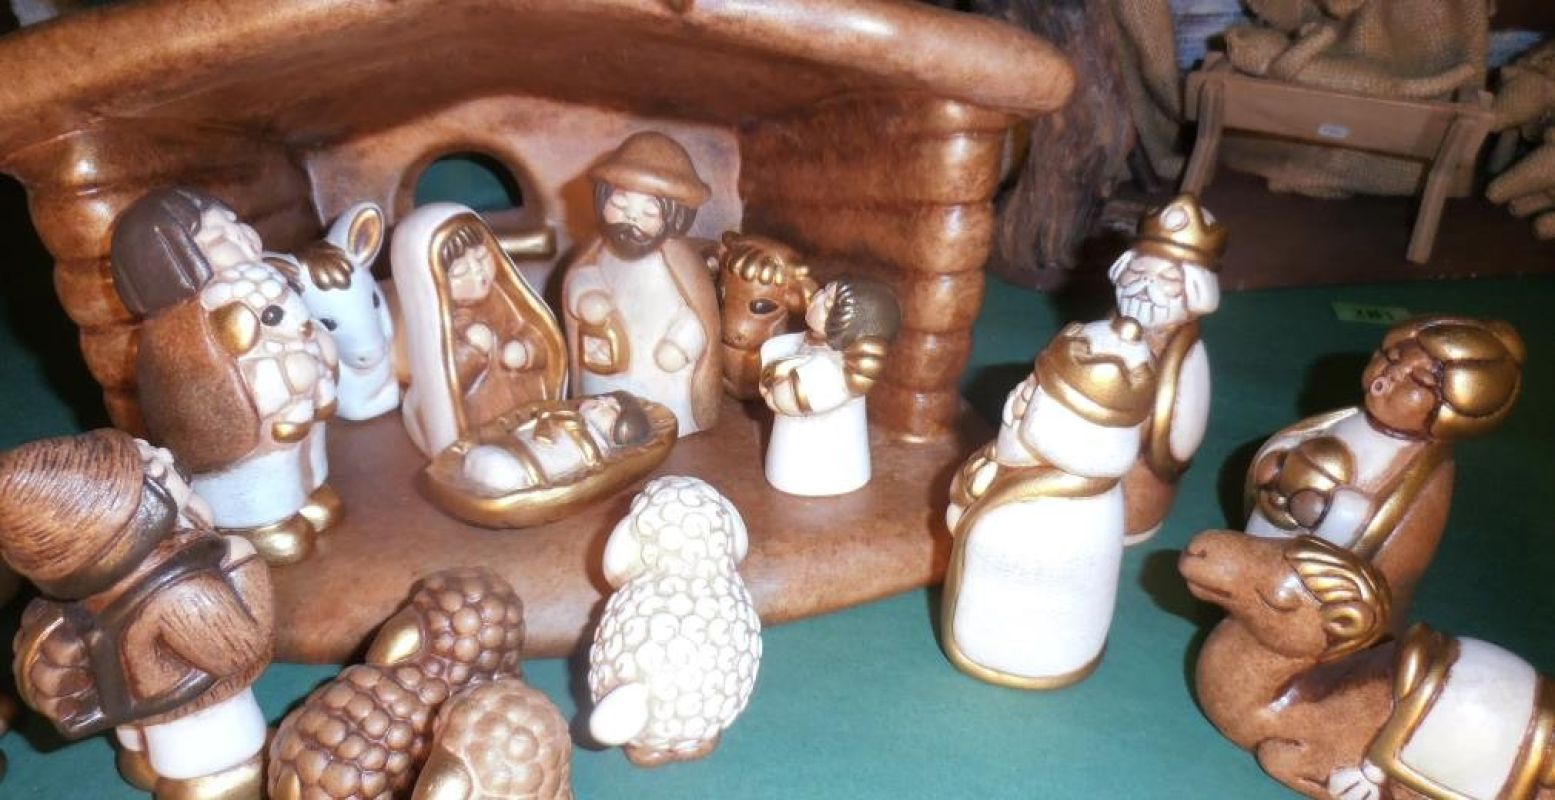 Forsgebouwde kerstfiguren uit Zuid-Tirol, Italië. Foto: Kerststallen Expositie.